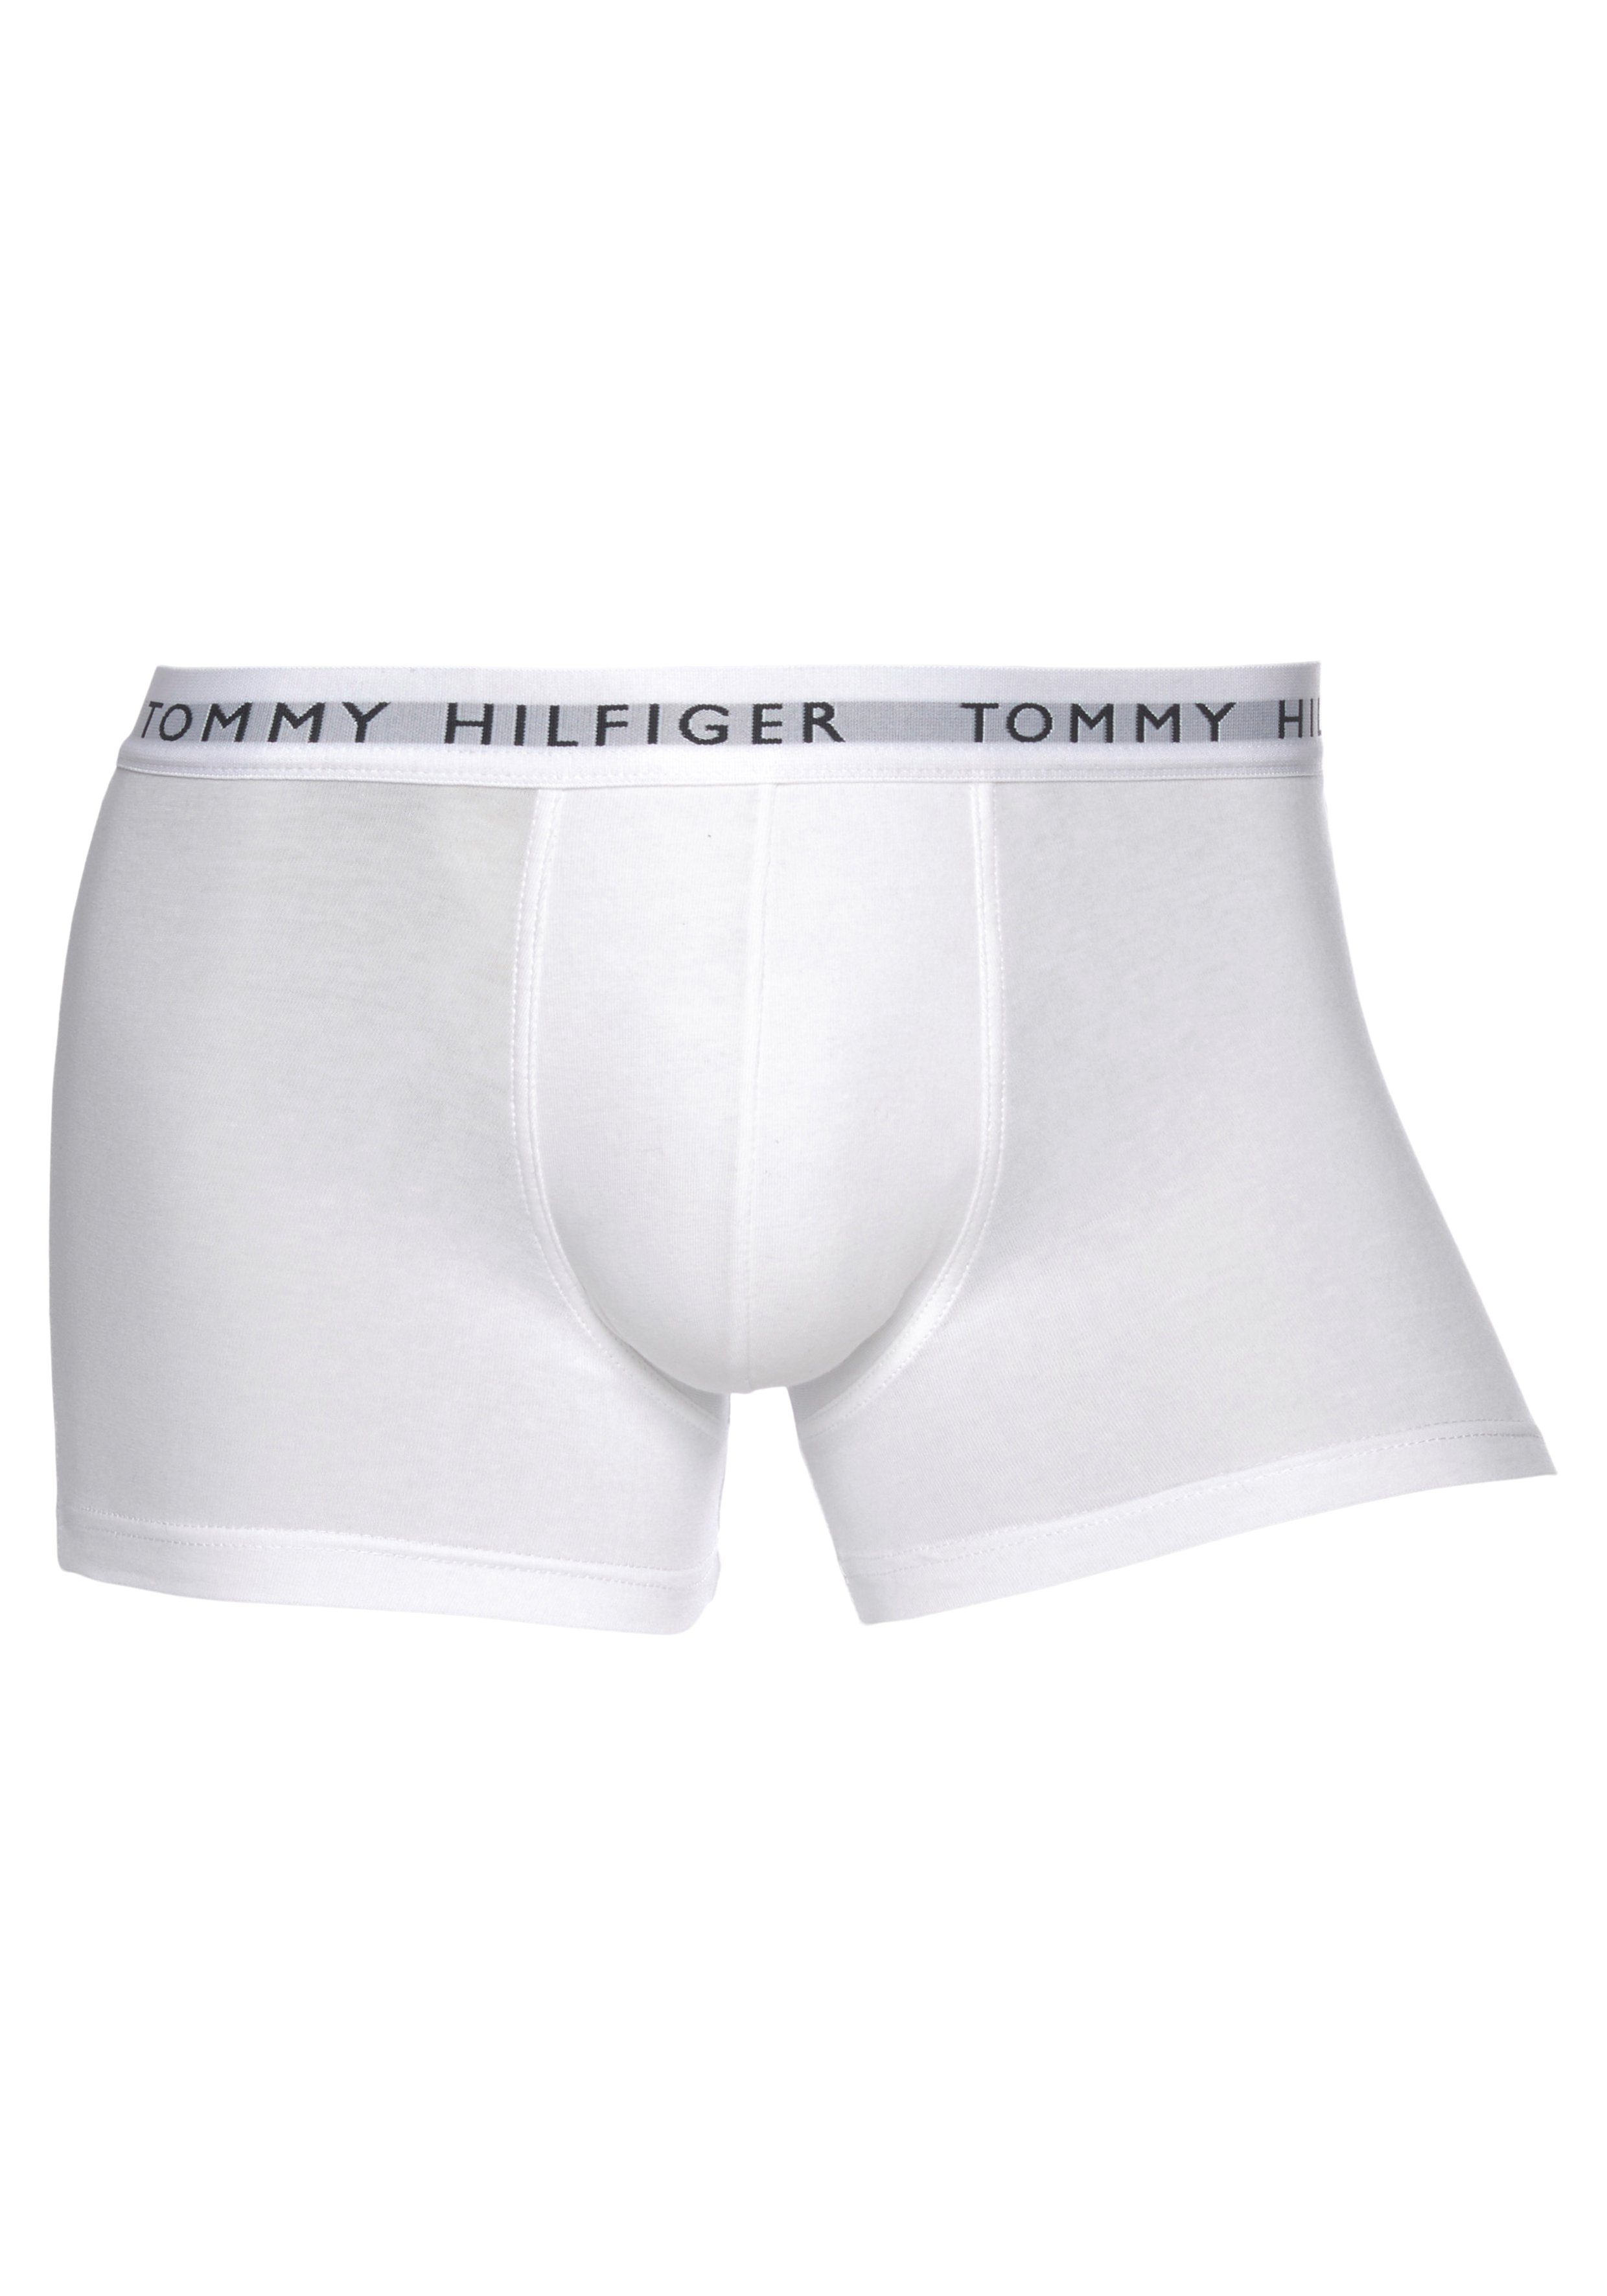 Tommy Hilfiger Logo 3er-Pack) Grey/White/Black (Packung, Boxer Underwear mit Webbund White/Heather 3-St